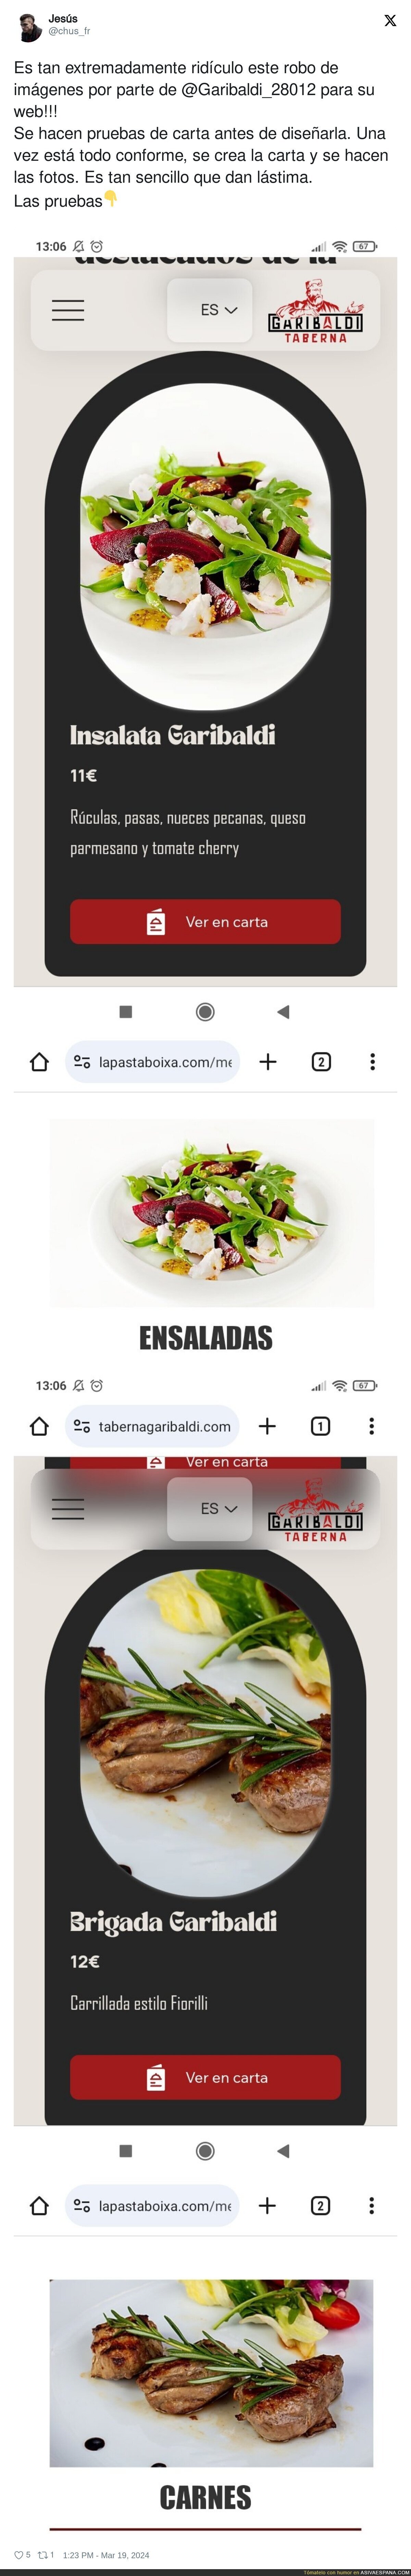 La Taberna de Pablo Iglesias plagia imágenes de supuestos platos que sirven